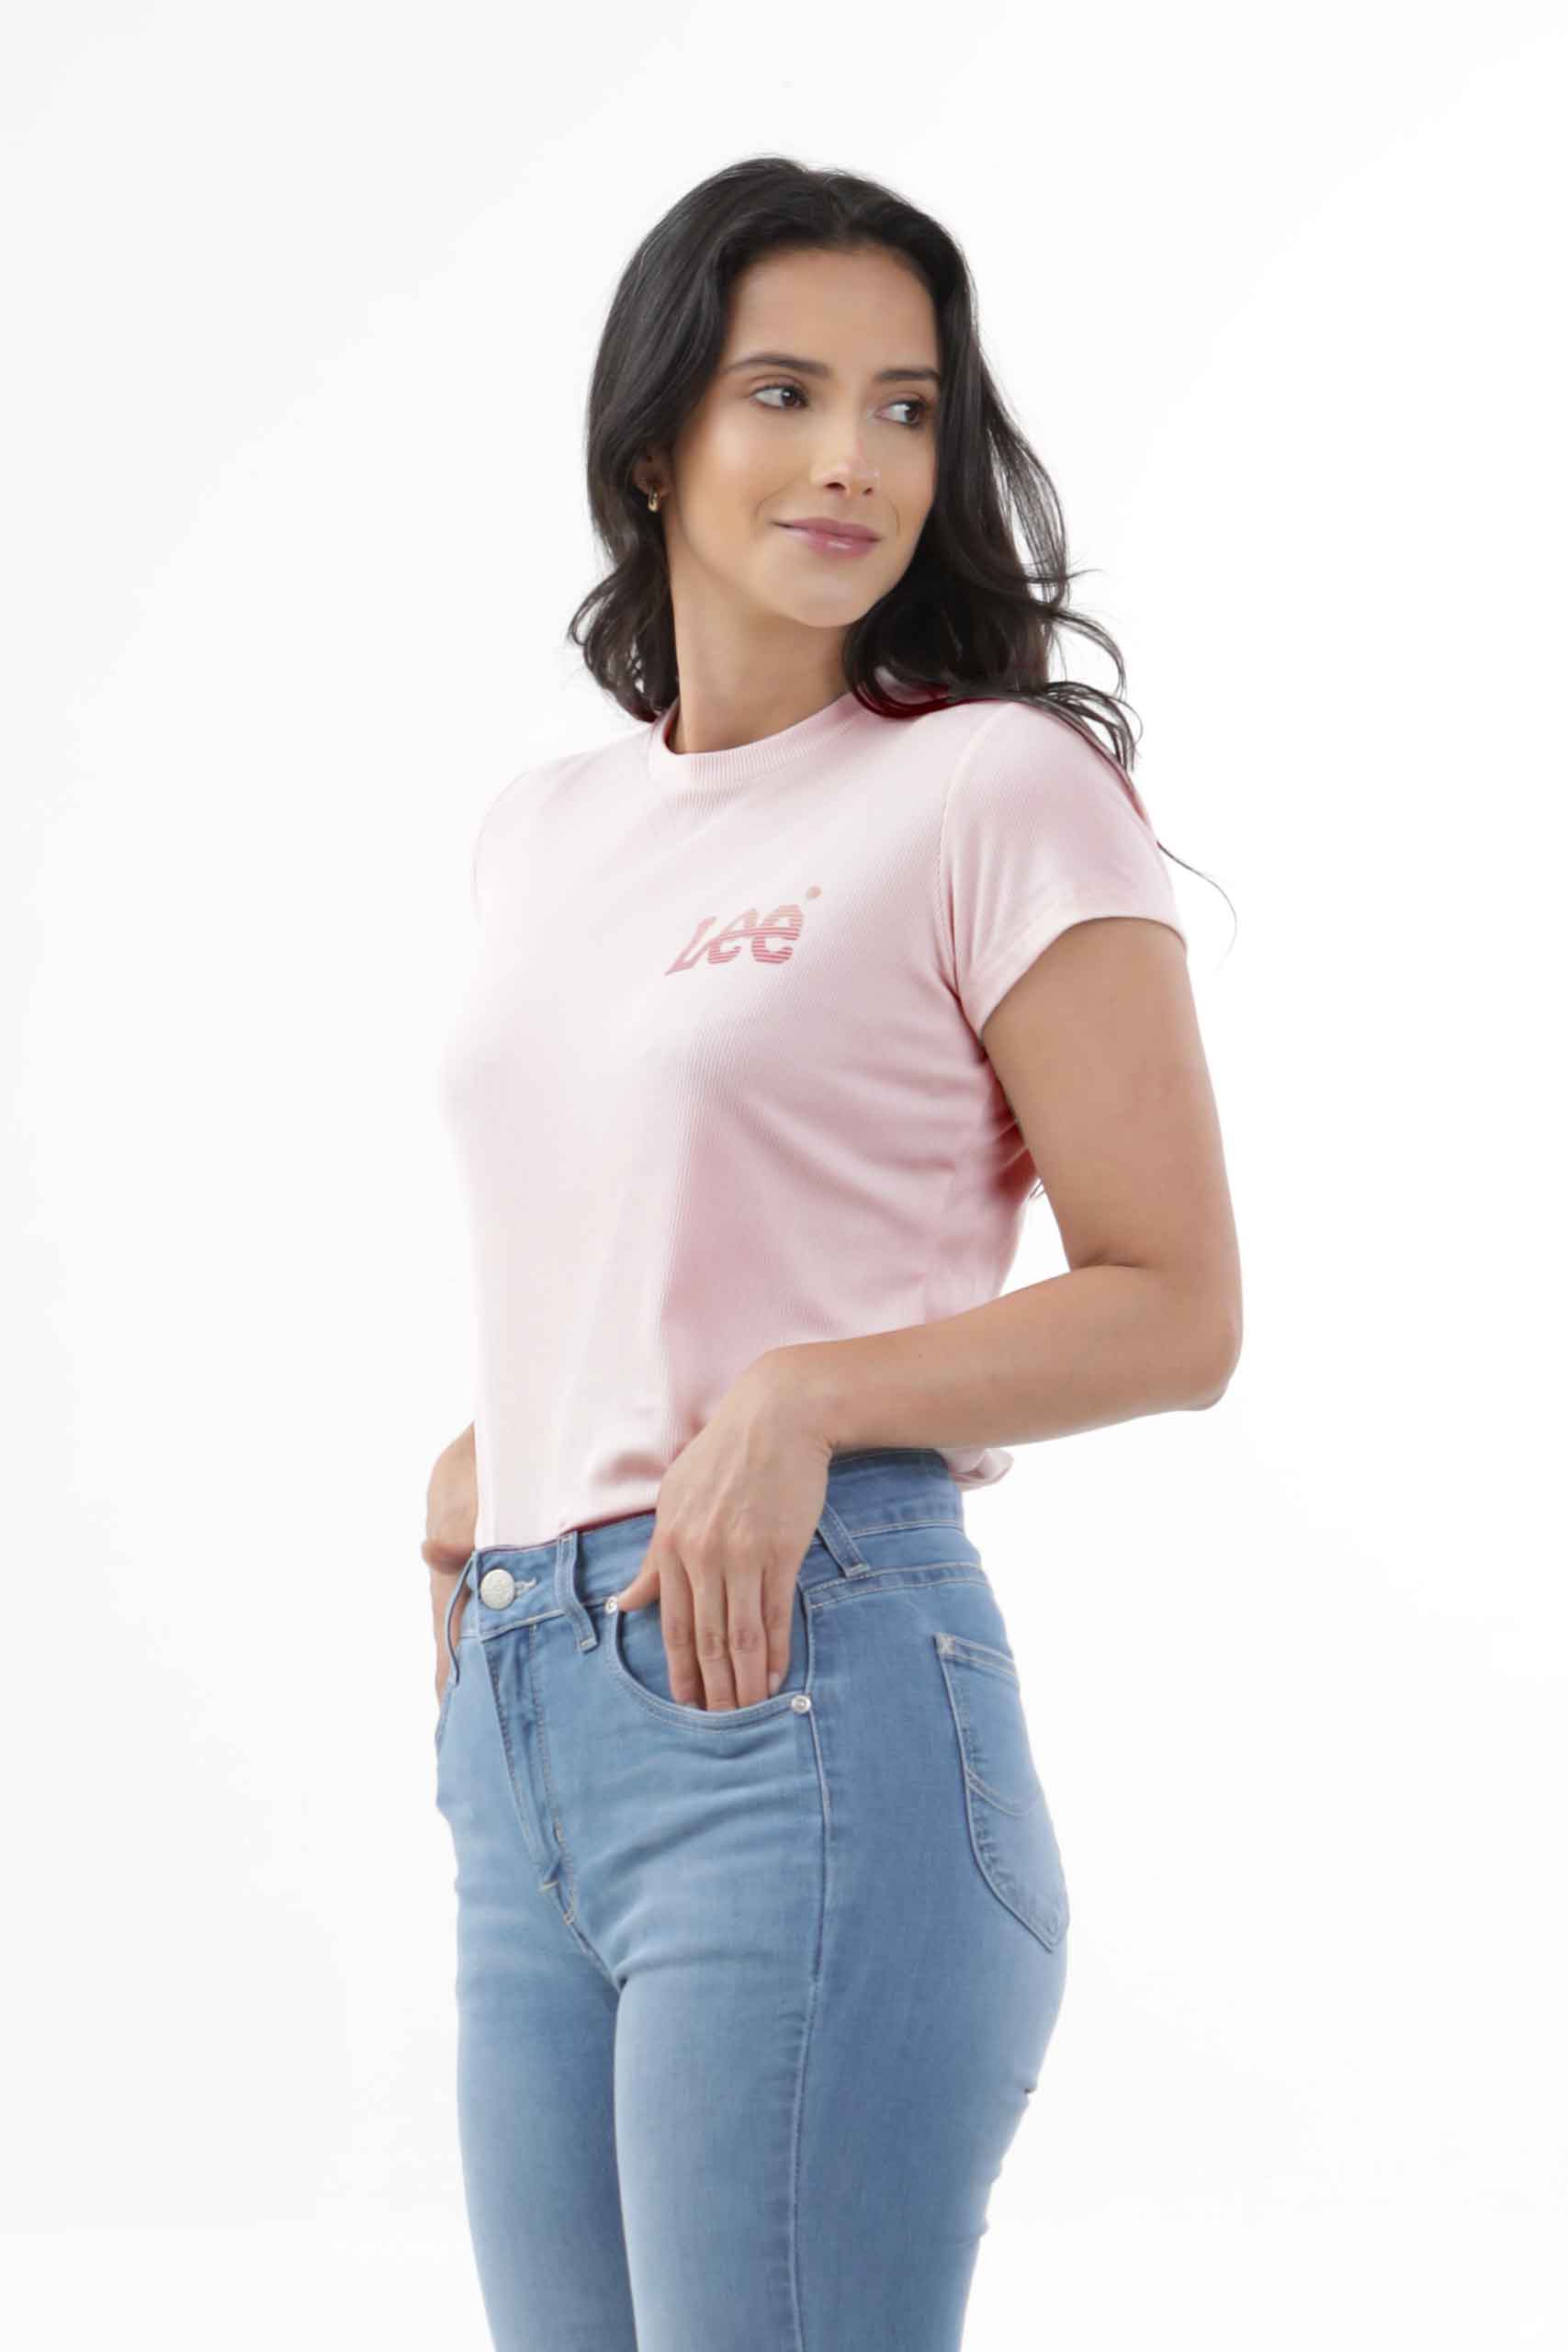 Vista lateral de camiseta de color rosa con logo de marca lee